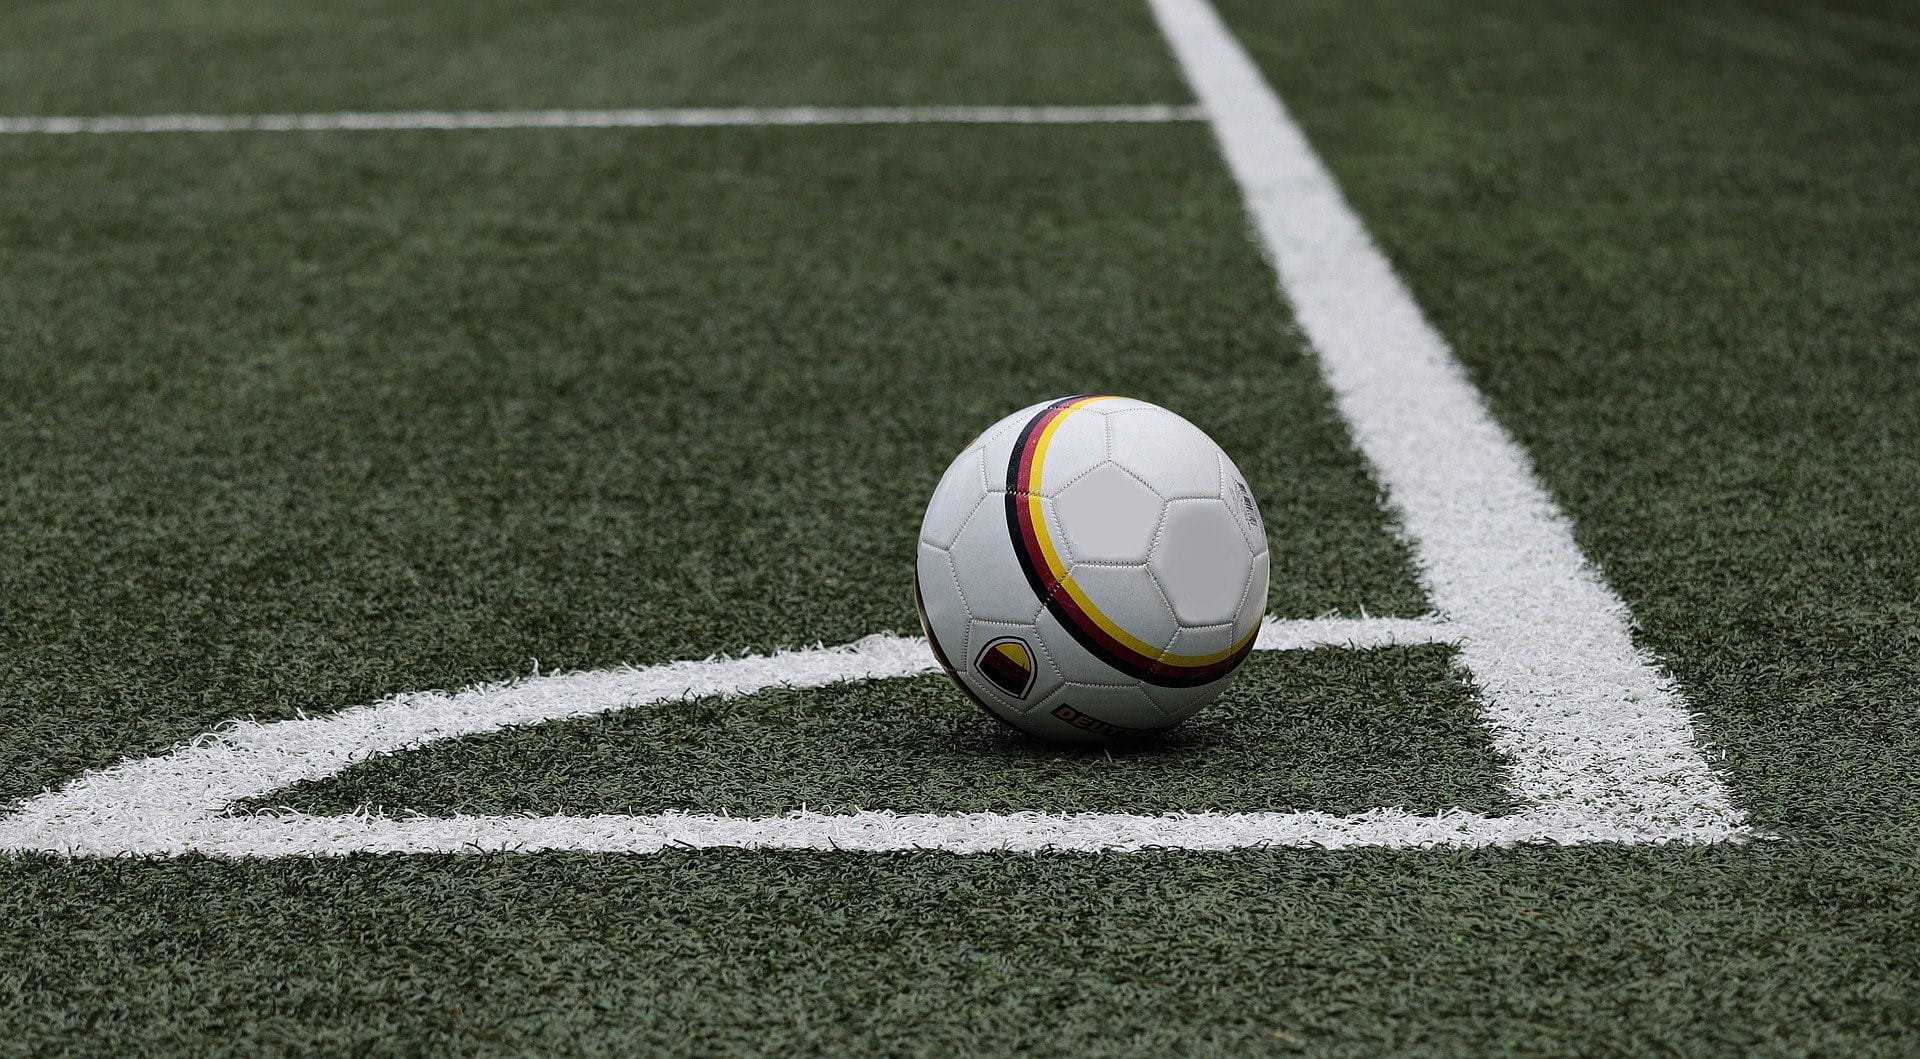 Ein Fußball liegt im eingezeichneten Eck eines Fußballfeldes.